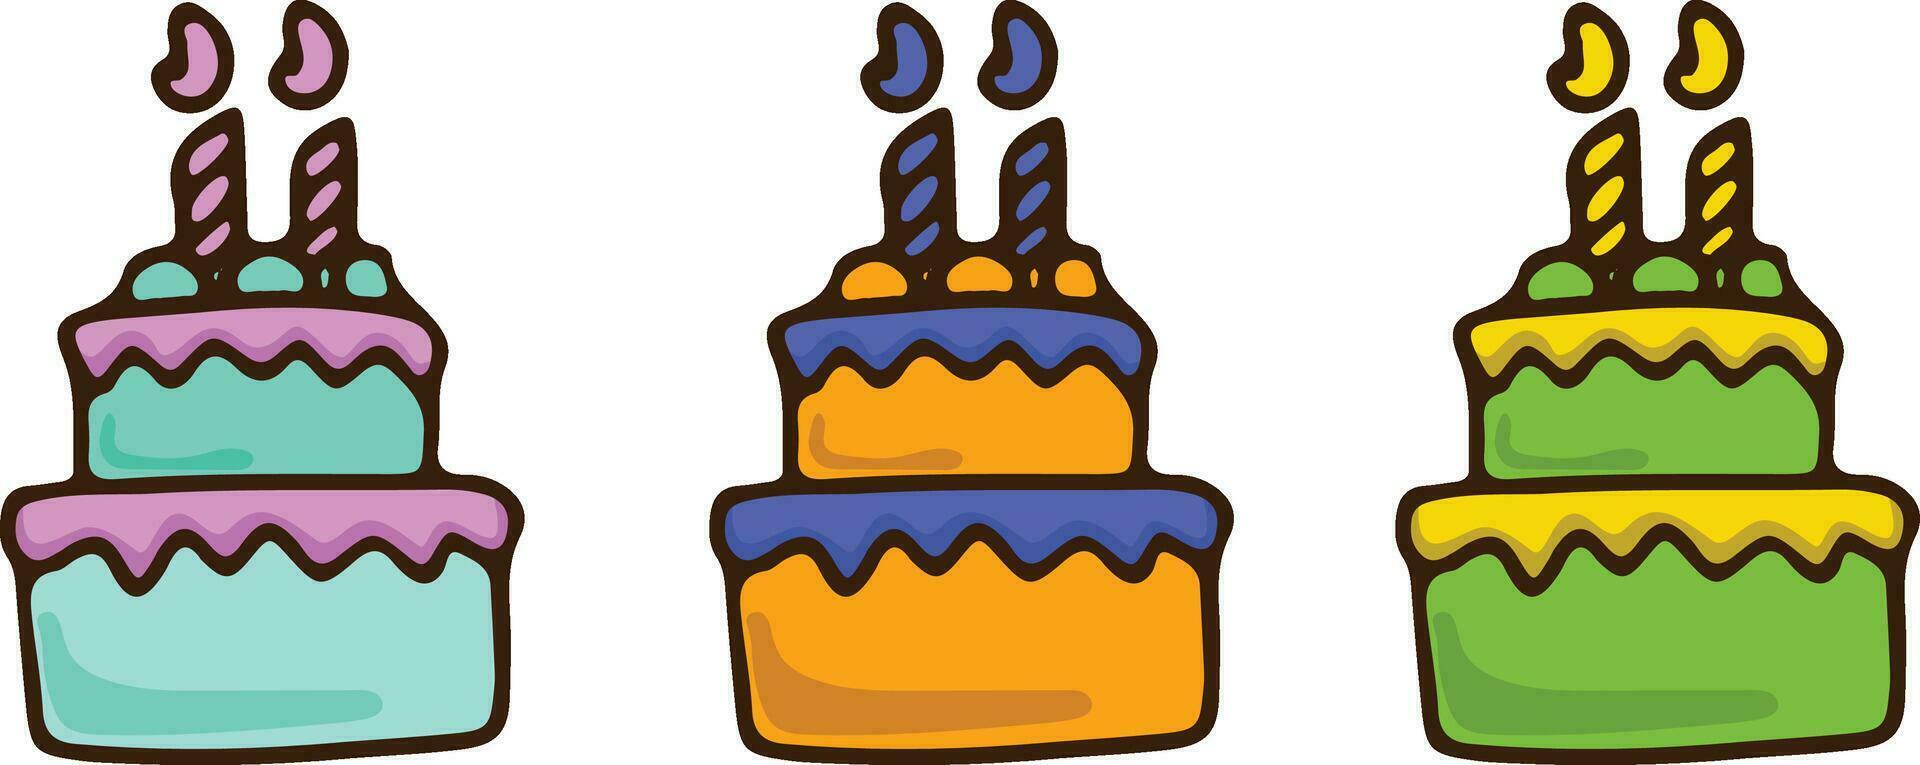 vettore piatto illustrazione di un' collezione di compleanno torte, biscotti, spugna torta, crema torta, di diverso colori e sapori.